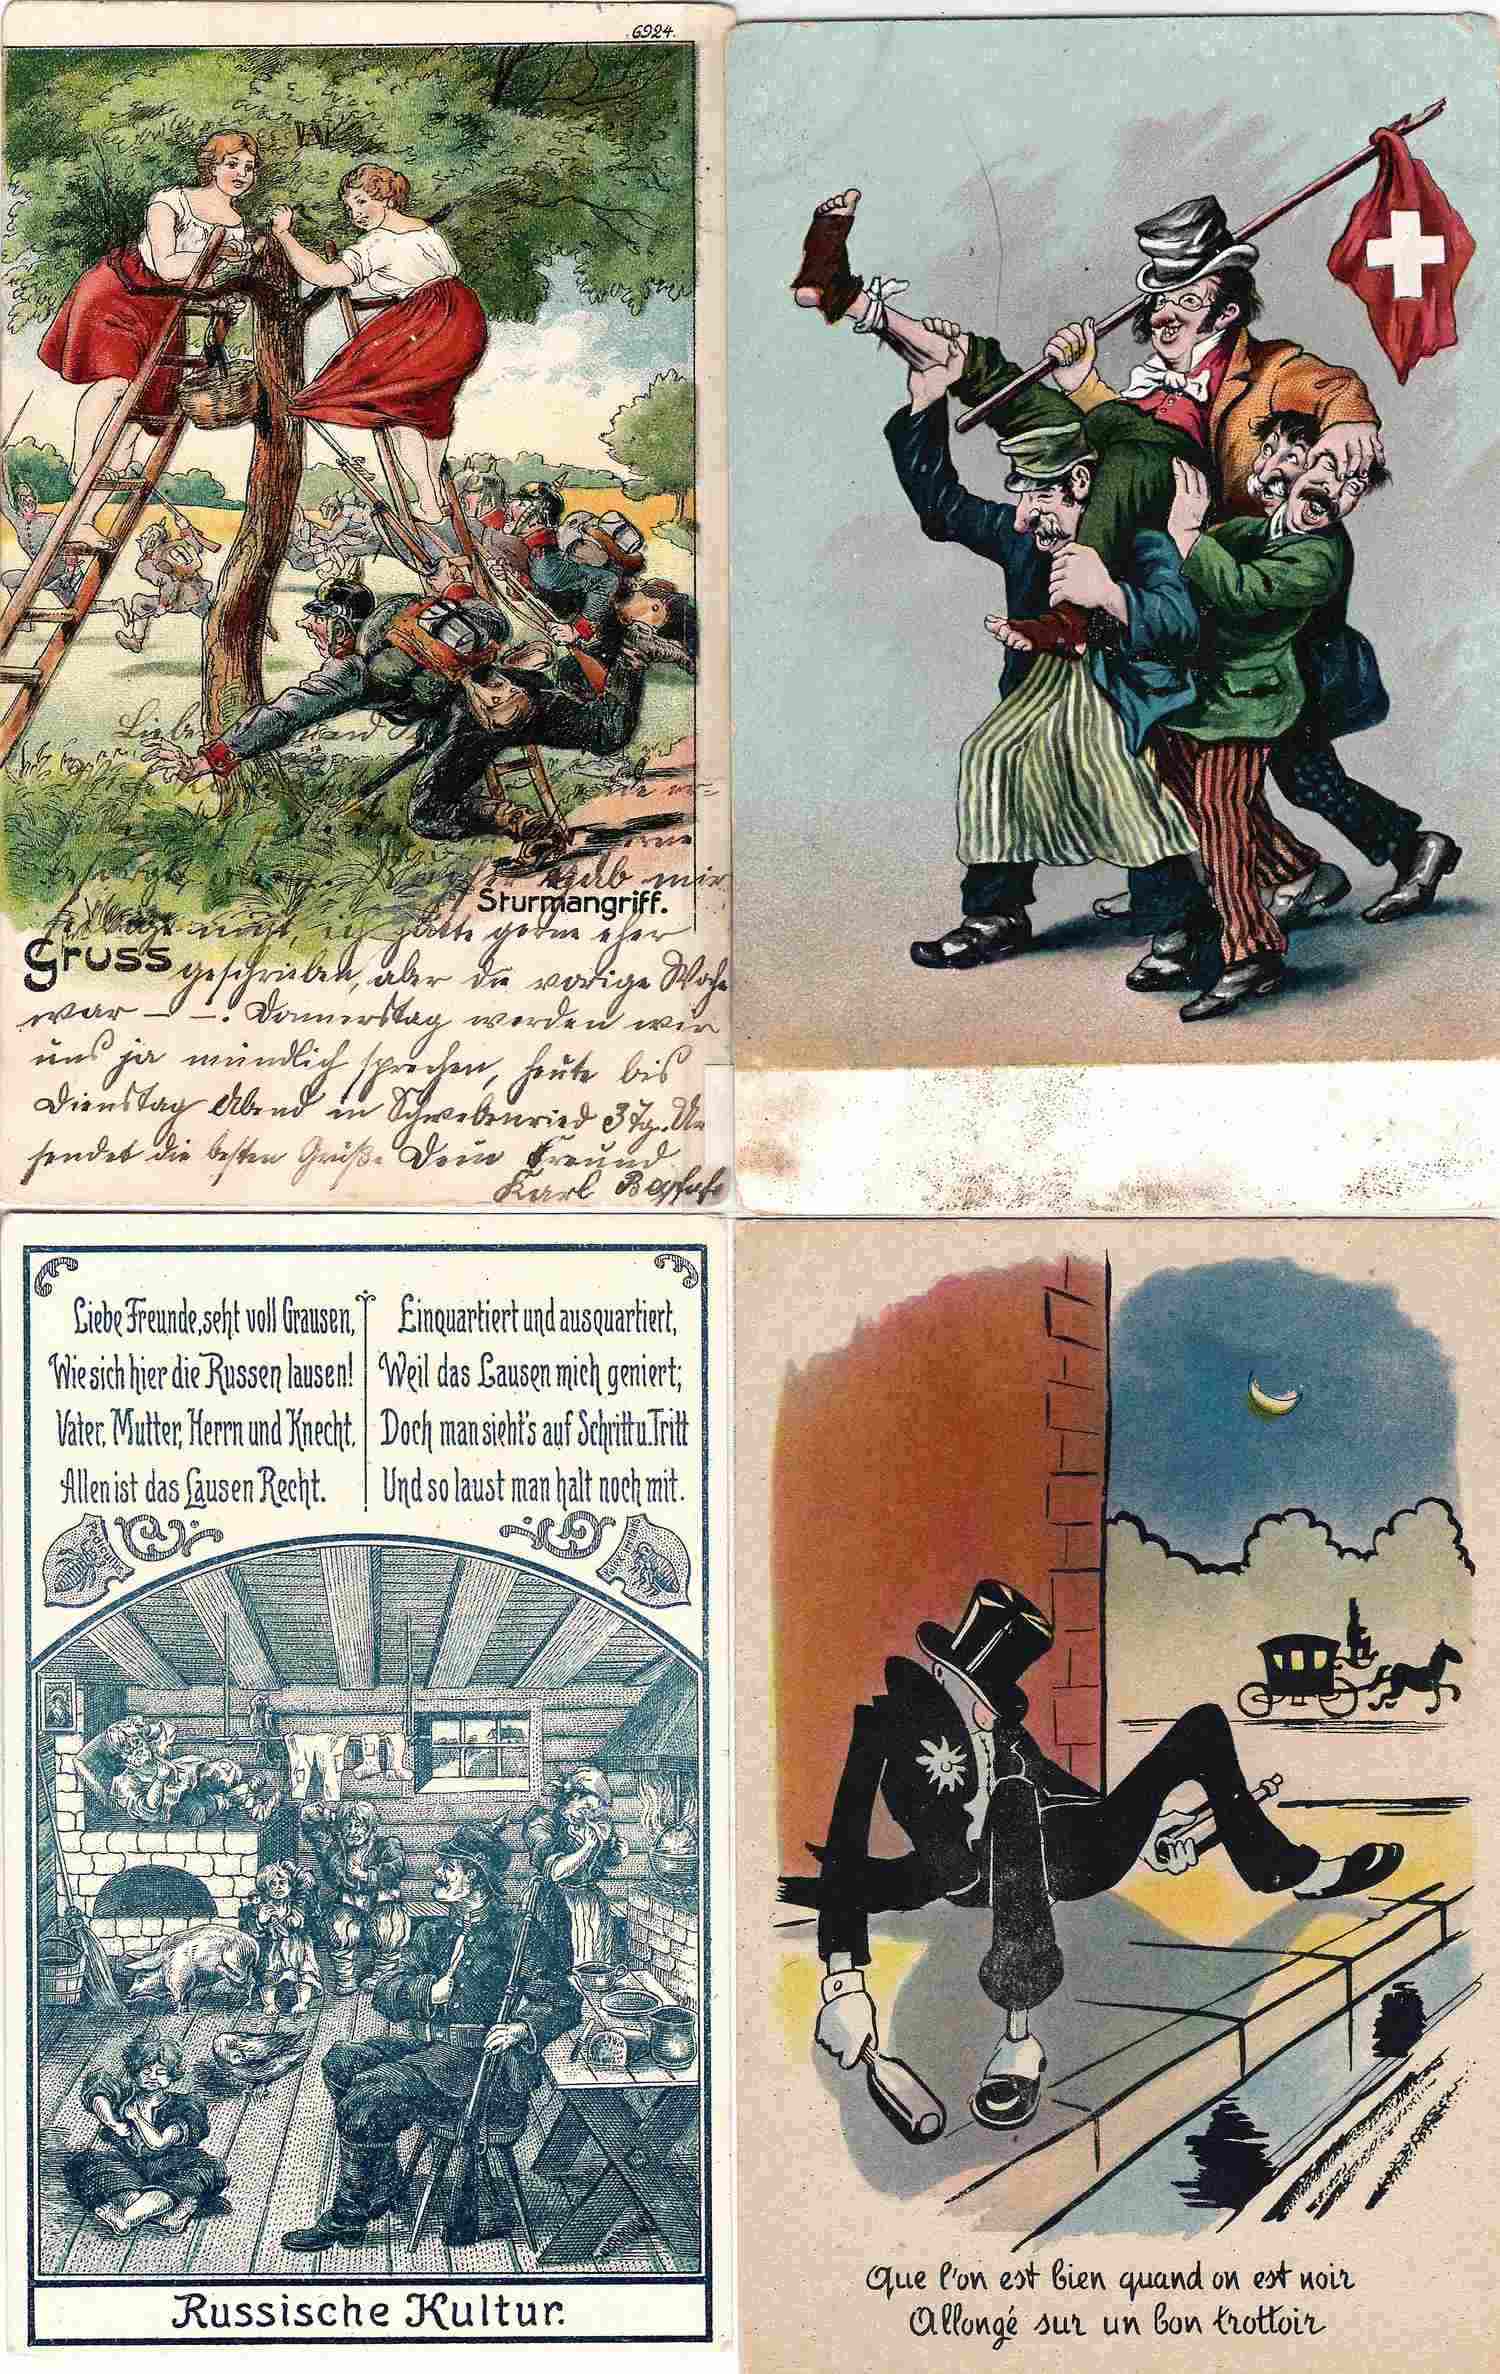 29 открыток «Юмор». Зап. Европа, нач. XX века.